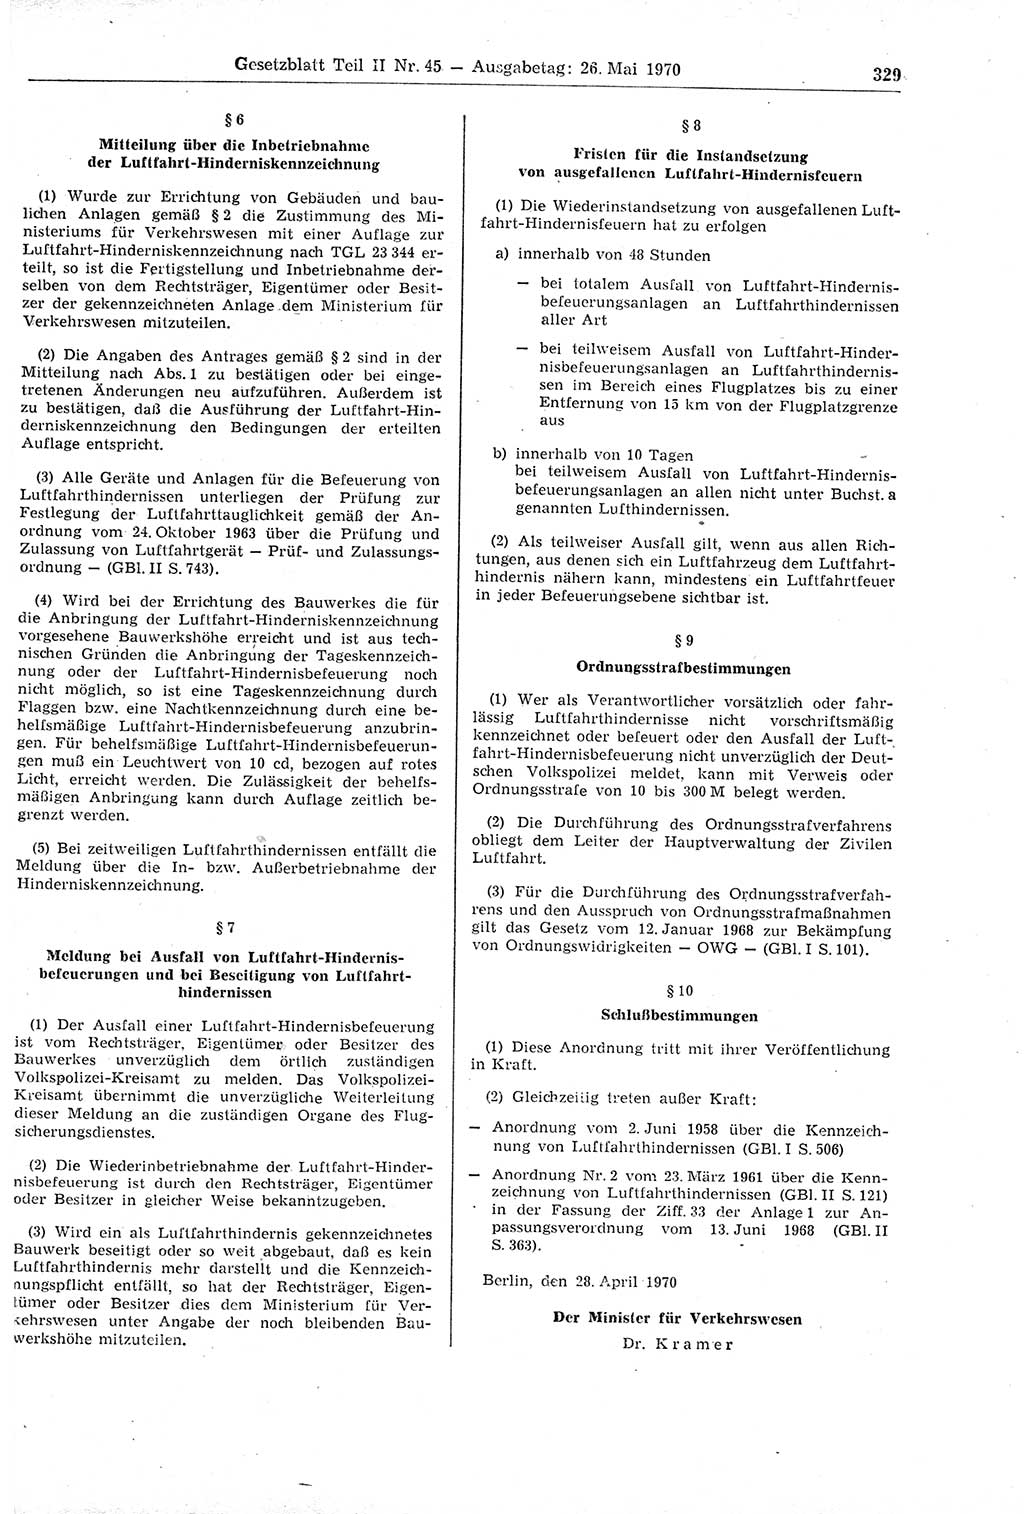 Gesetzblatt (GBl.) der Deutschen Demokratischen Republik (DDR) Teil ⅠⅠ 1970, Seite 329 (GBl. DDR ⅠⅠ 1970, S. 329)